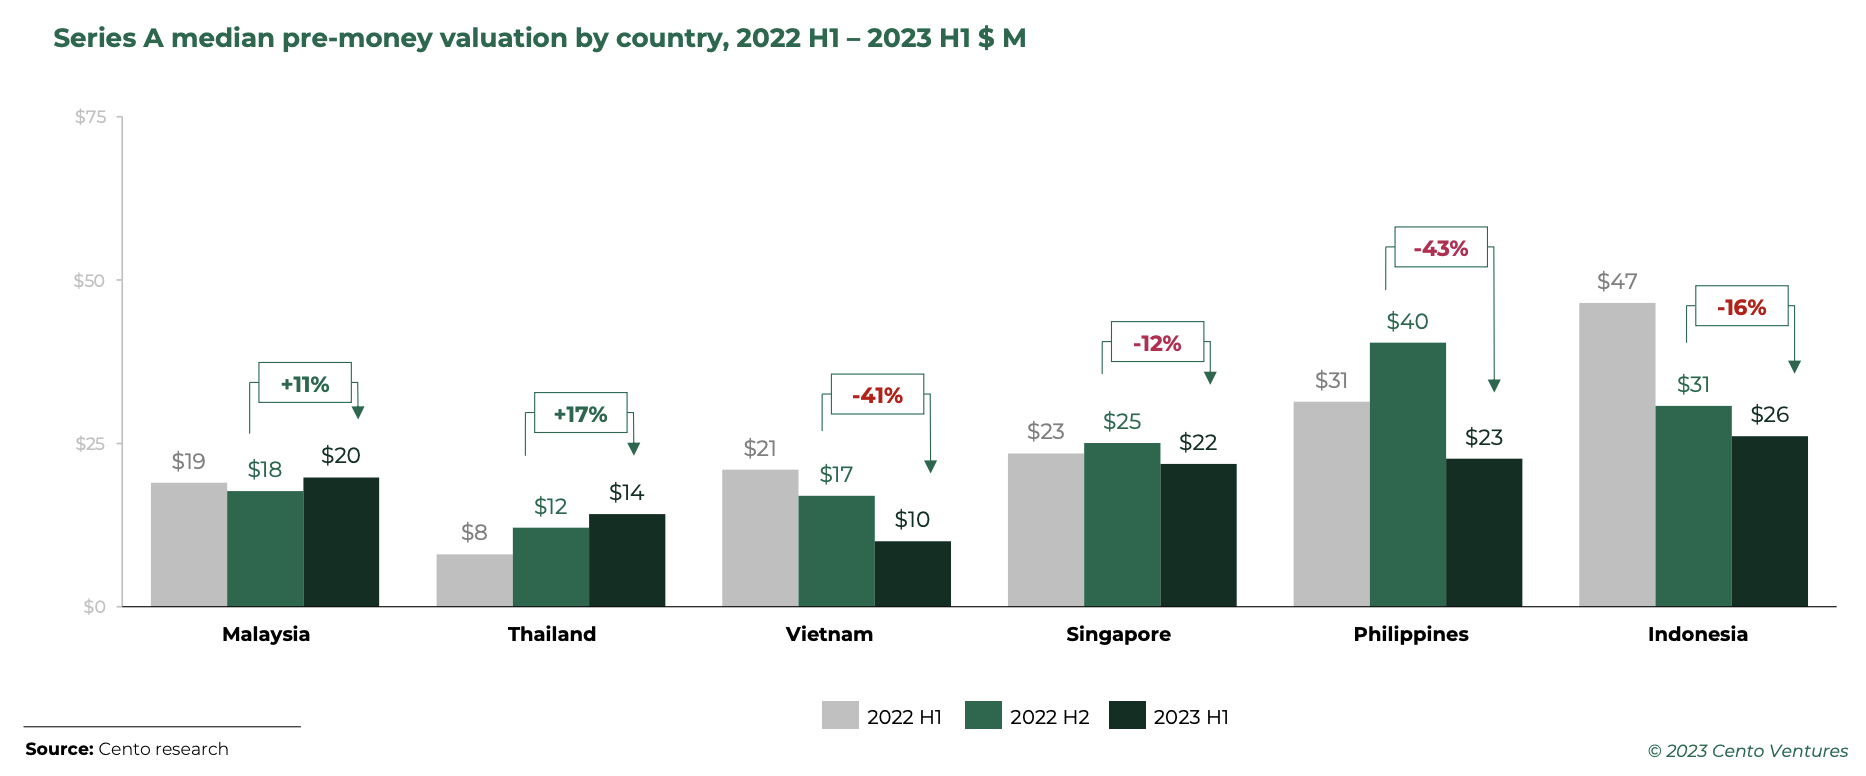 Định giá trung bình trước khi gọi vốn Series A theo quốc gia, nửa đầu năm 2022 – nửa đầu năm 1 Triệu đô la Mỹ, Nguồn: Đầu tư công nghệ Đông Nam Á 2023 H1, Cento Ventures, tháng 2023 năm 1